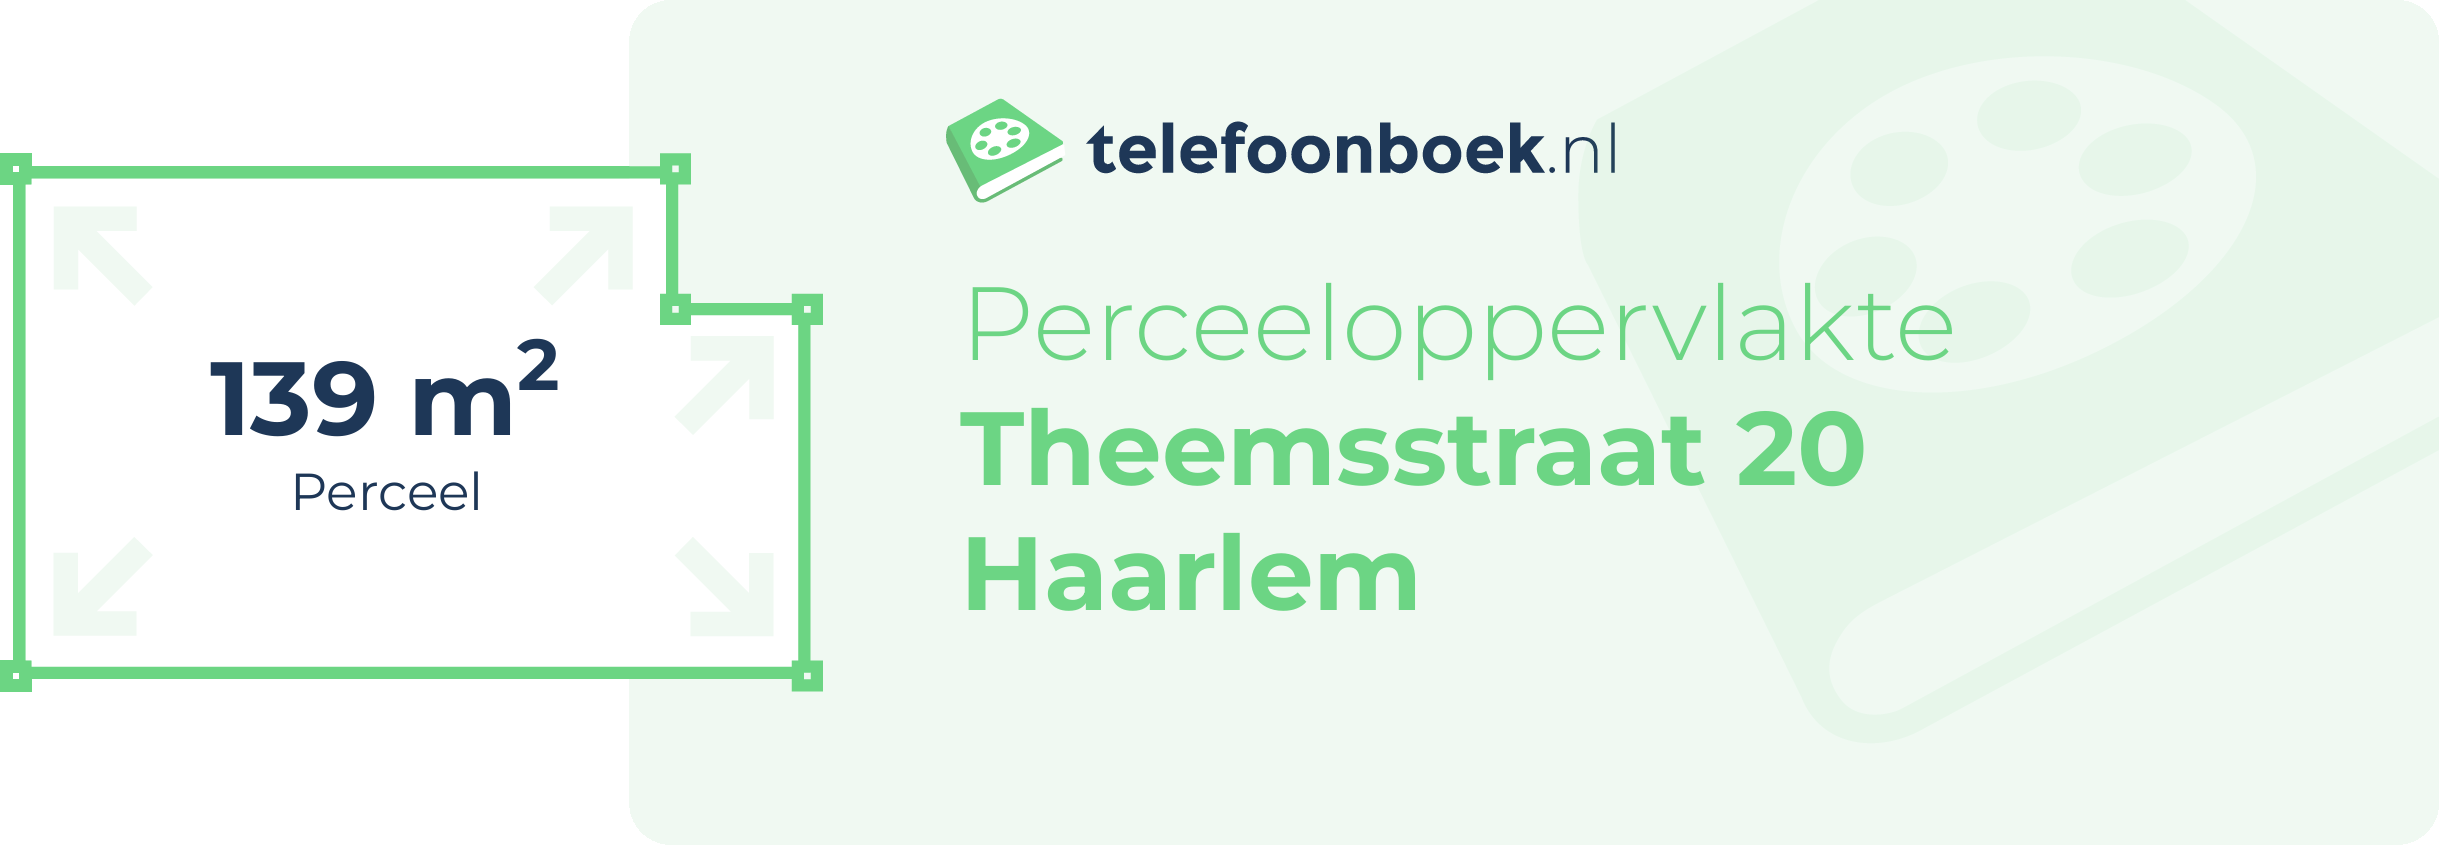 Perceeloppervlakte Theemsstraat 20 Haarlem